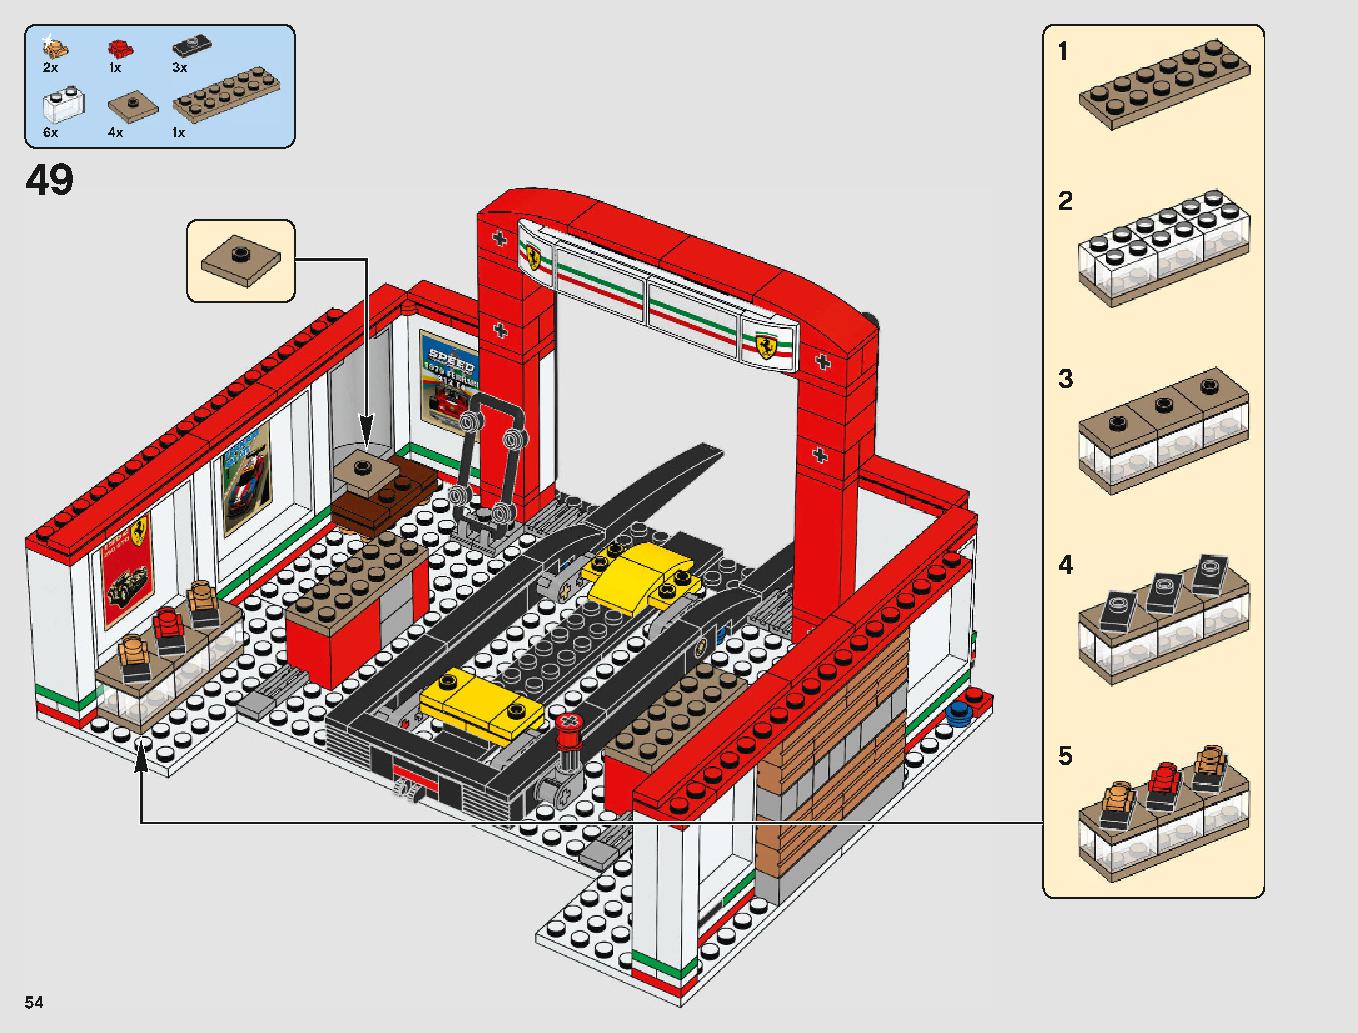 フェラーリ・アルティメット・ガレージ 75889 レゴの商品情報 レゴの説明書・組立方法 54 page